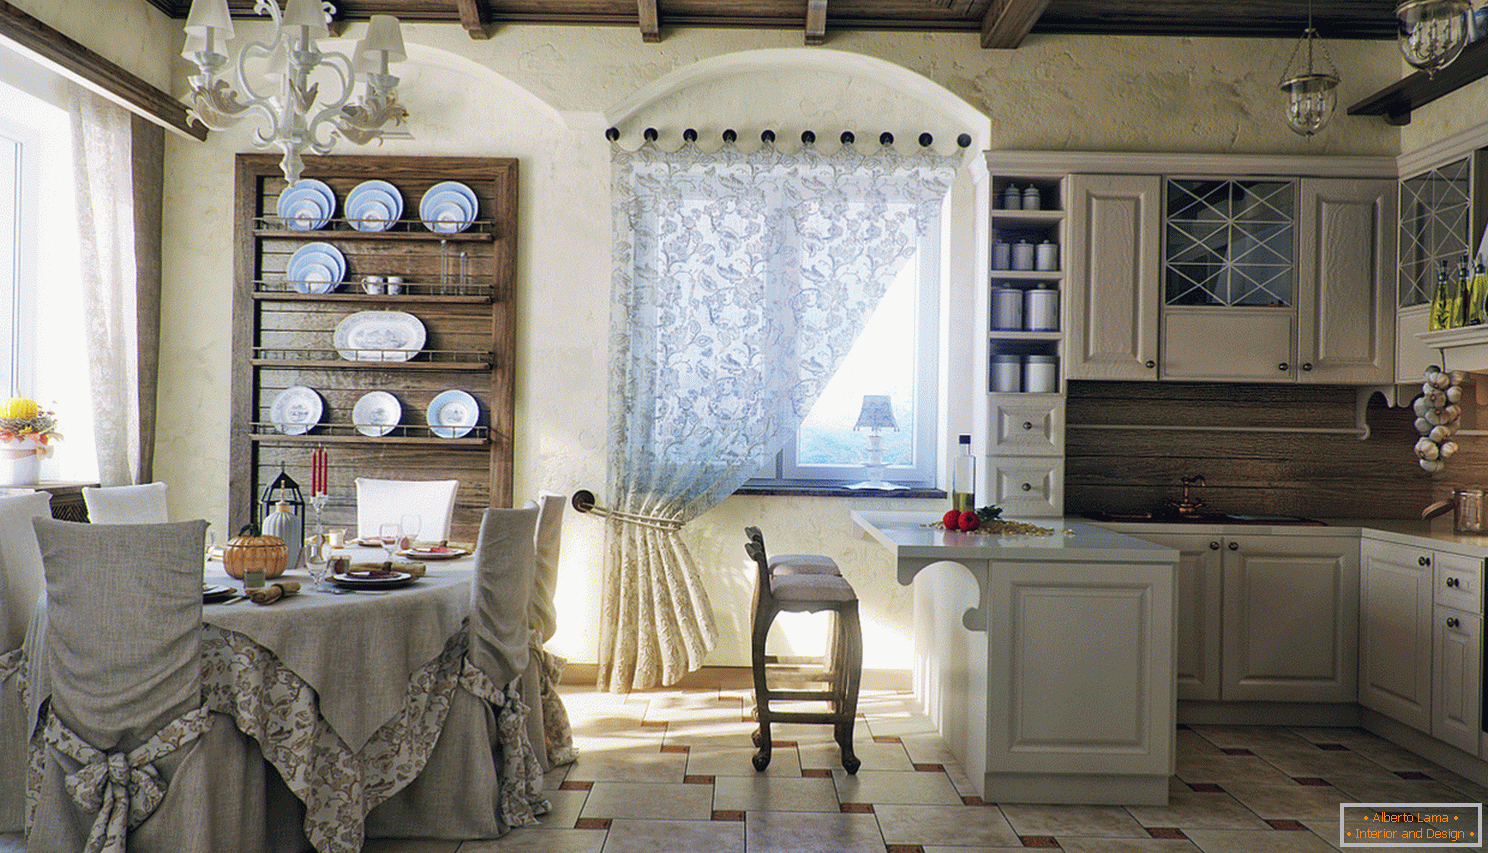 Cozinha e sala de jantar em estilo country